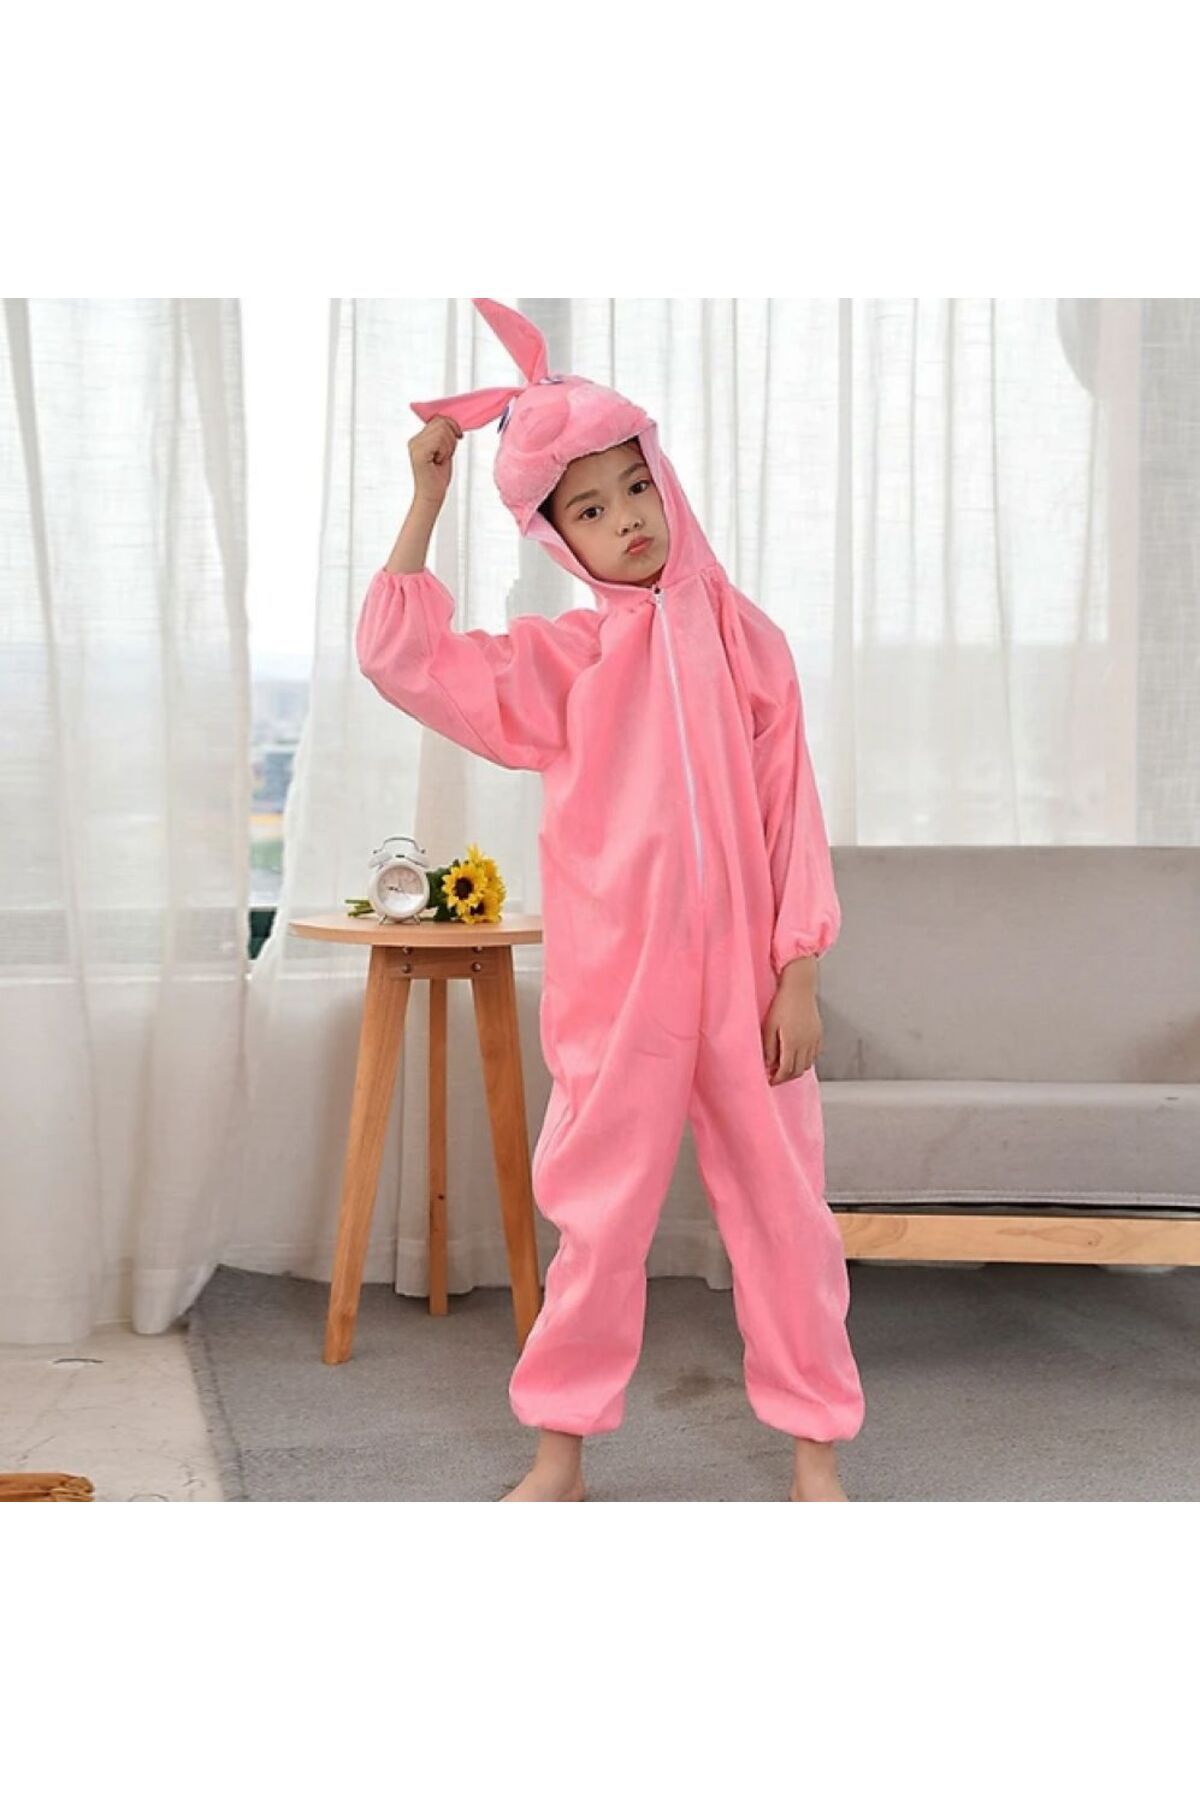 Skygo Çocuk Tavşan Kostümü Pembe Renk 2-3 Yaş 80 cm